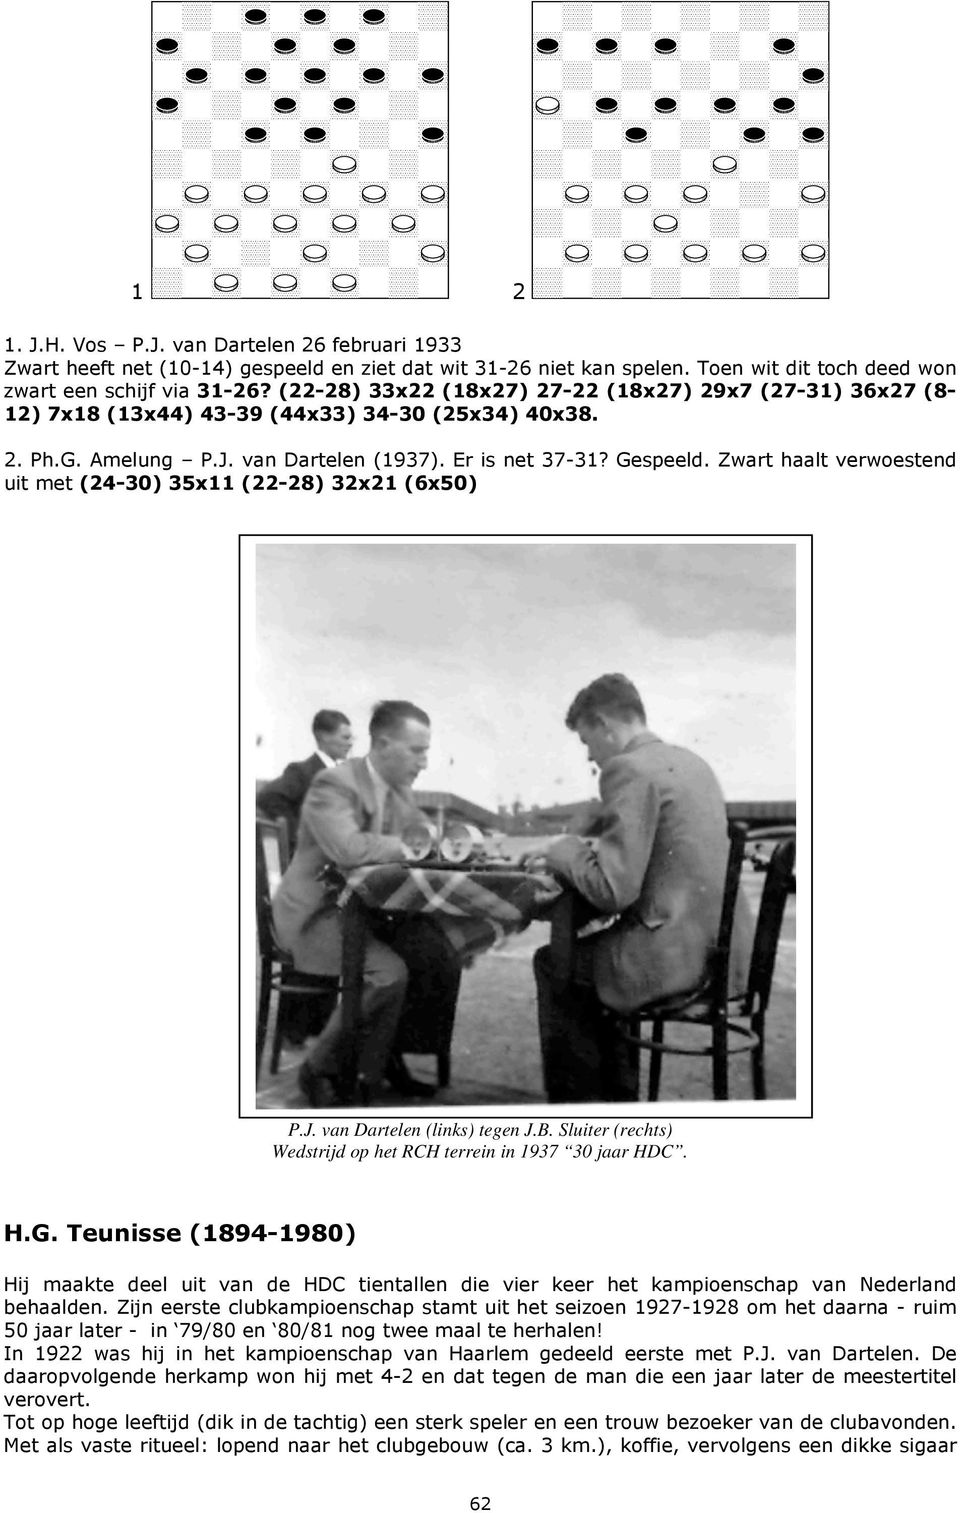 Zwart haalt verwoestend uit met (24-30) 35x11 (22-28) 32x21 (6x50) P.J. van Dartelen (links) tegen J.B. Sluiter (rechts) Wedstrijd op het RCH terrein in 1937 30 jaar HDC. H.G.